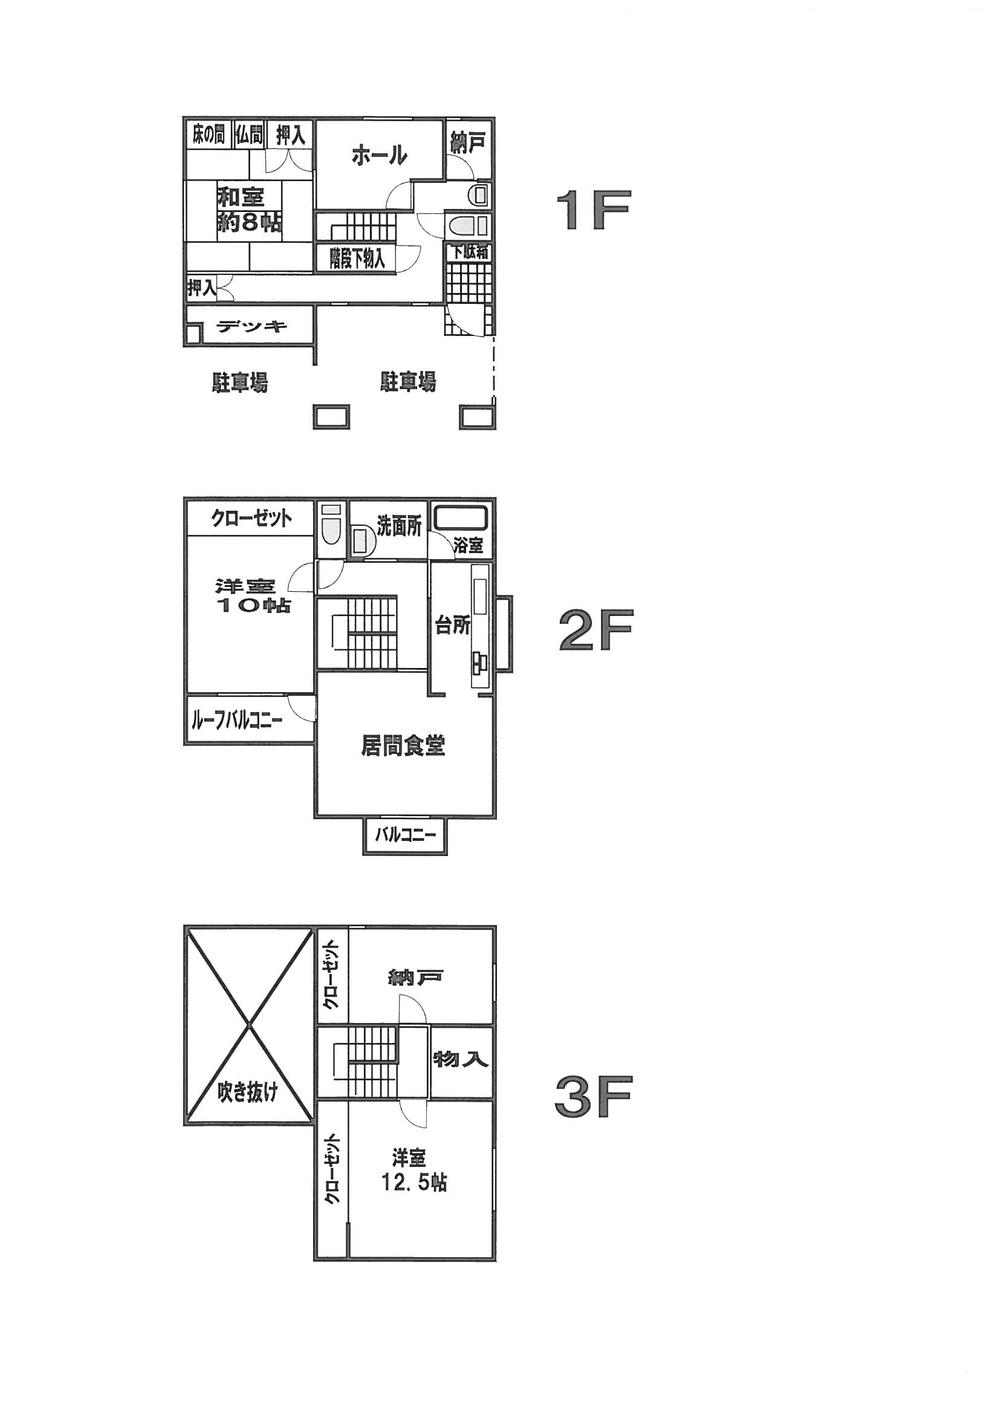 Floor plan. 32,300,000 yen, 3LDK + 2S (storeroom), Land area 159.47 sq m , Building area 165.92 sq m